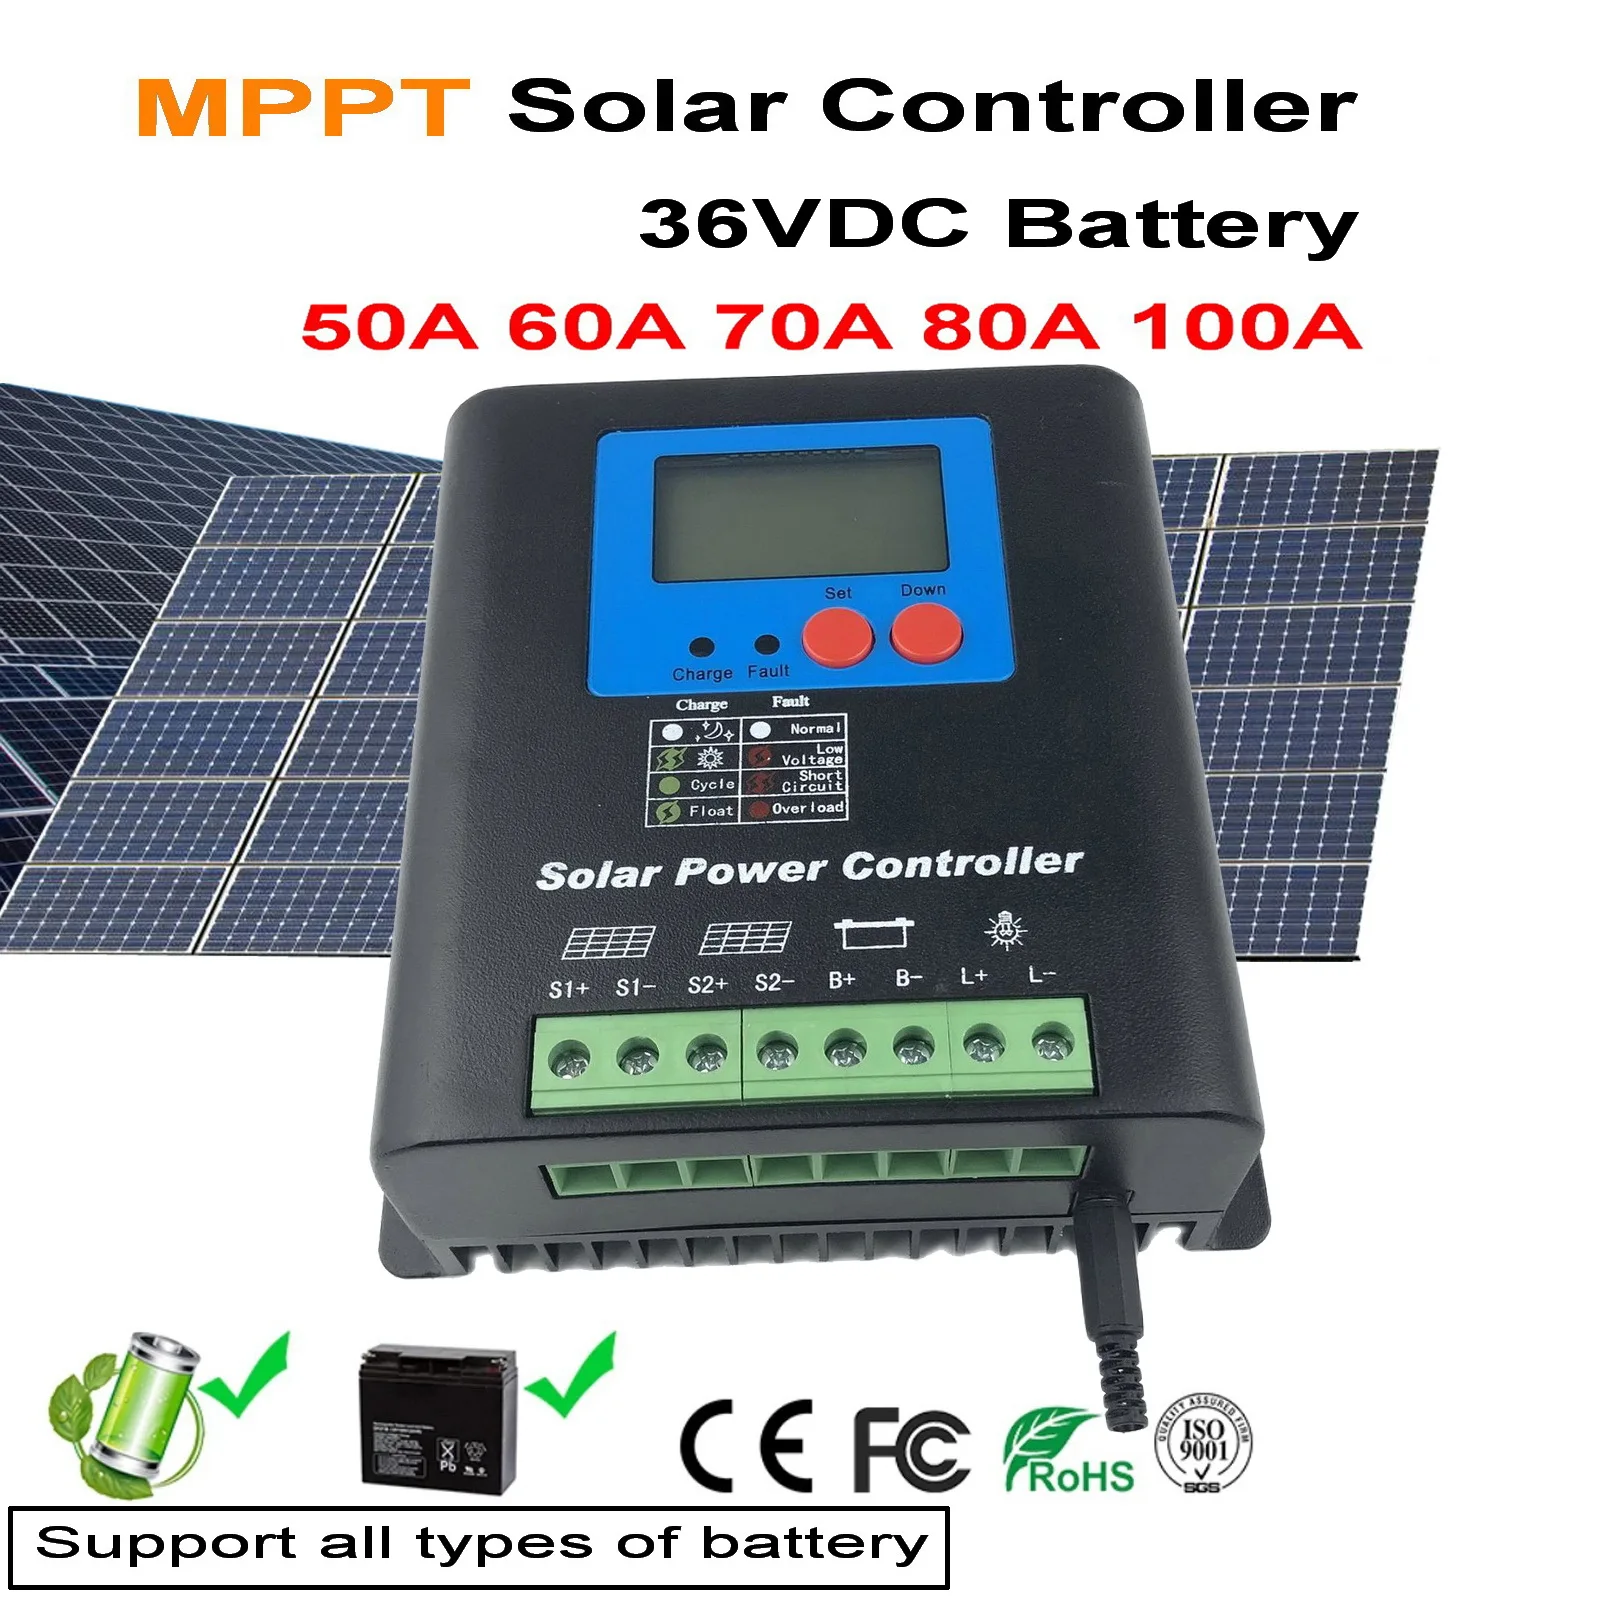 

Контроллер солнечного зарядного устройства MPPT 50A 60A 70A 80A 100A, ЖК-дисплей, 36 В 48 В аккумулятор, высокоэффективный Регулятор солнечной энергии, с...